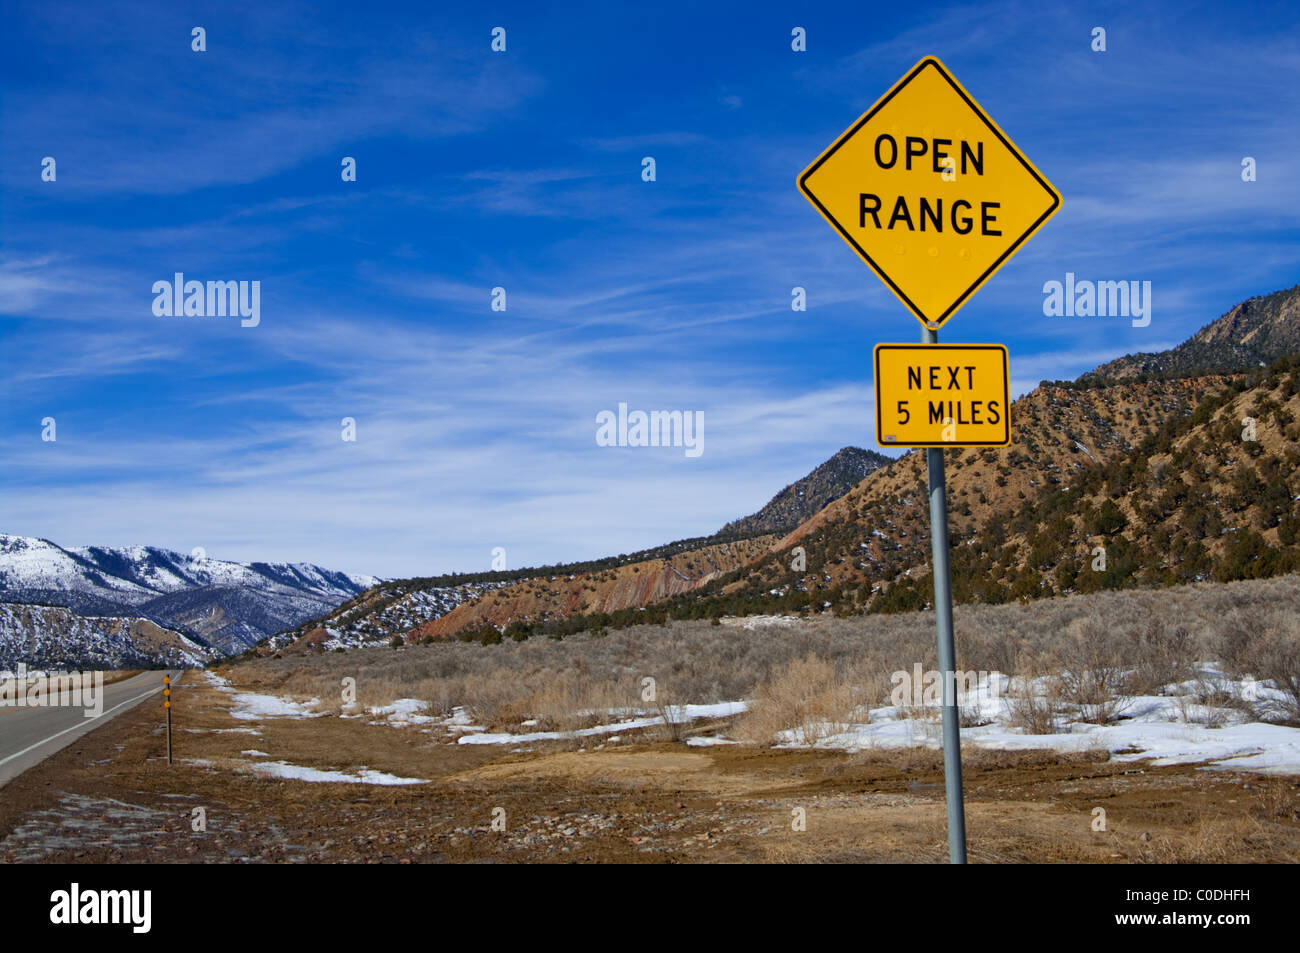 Open Range Sign stock image. Image of hotel, arizona, gump - 9524345